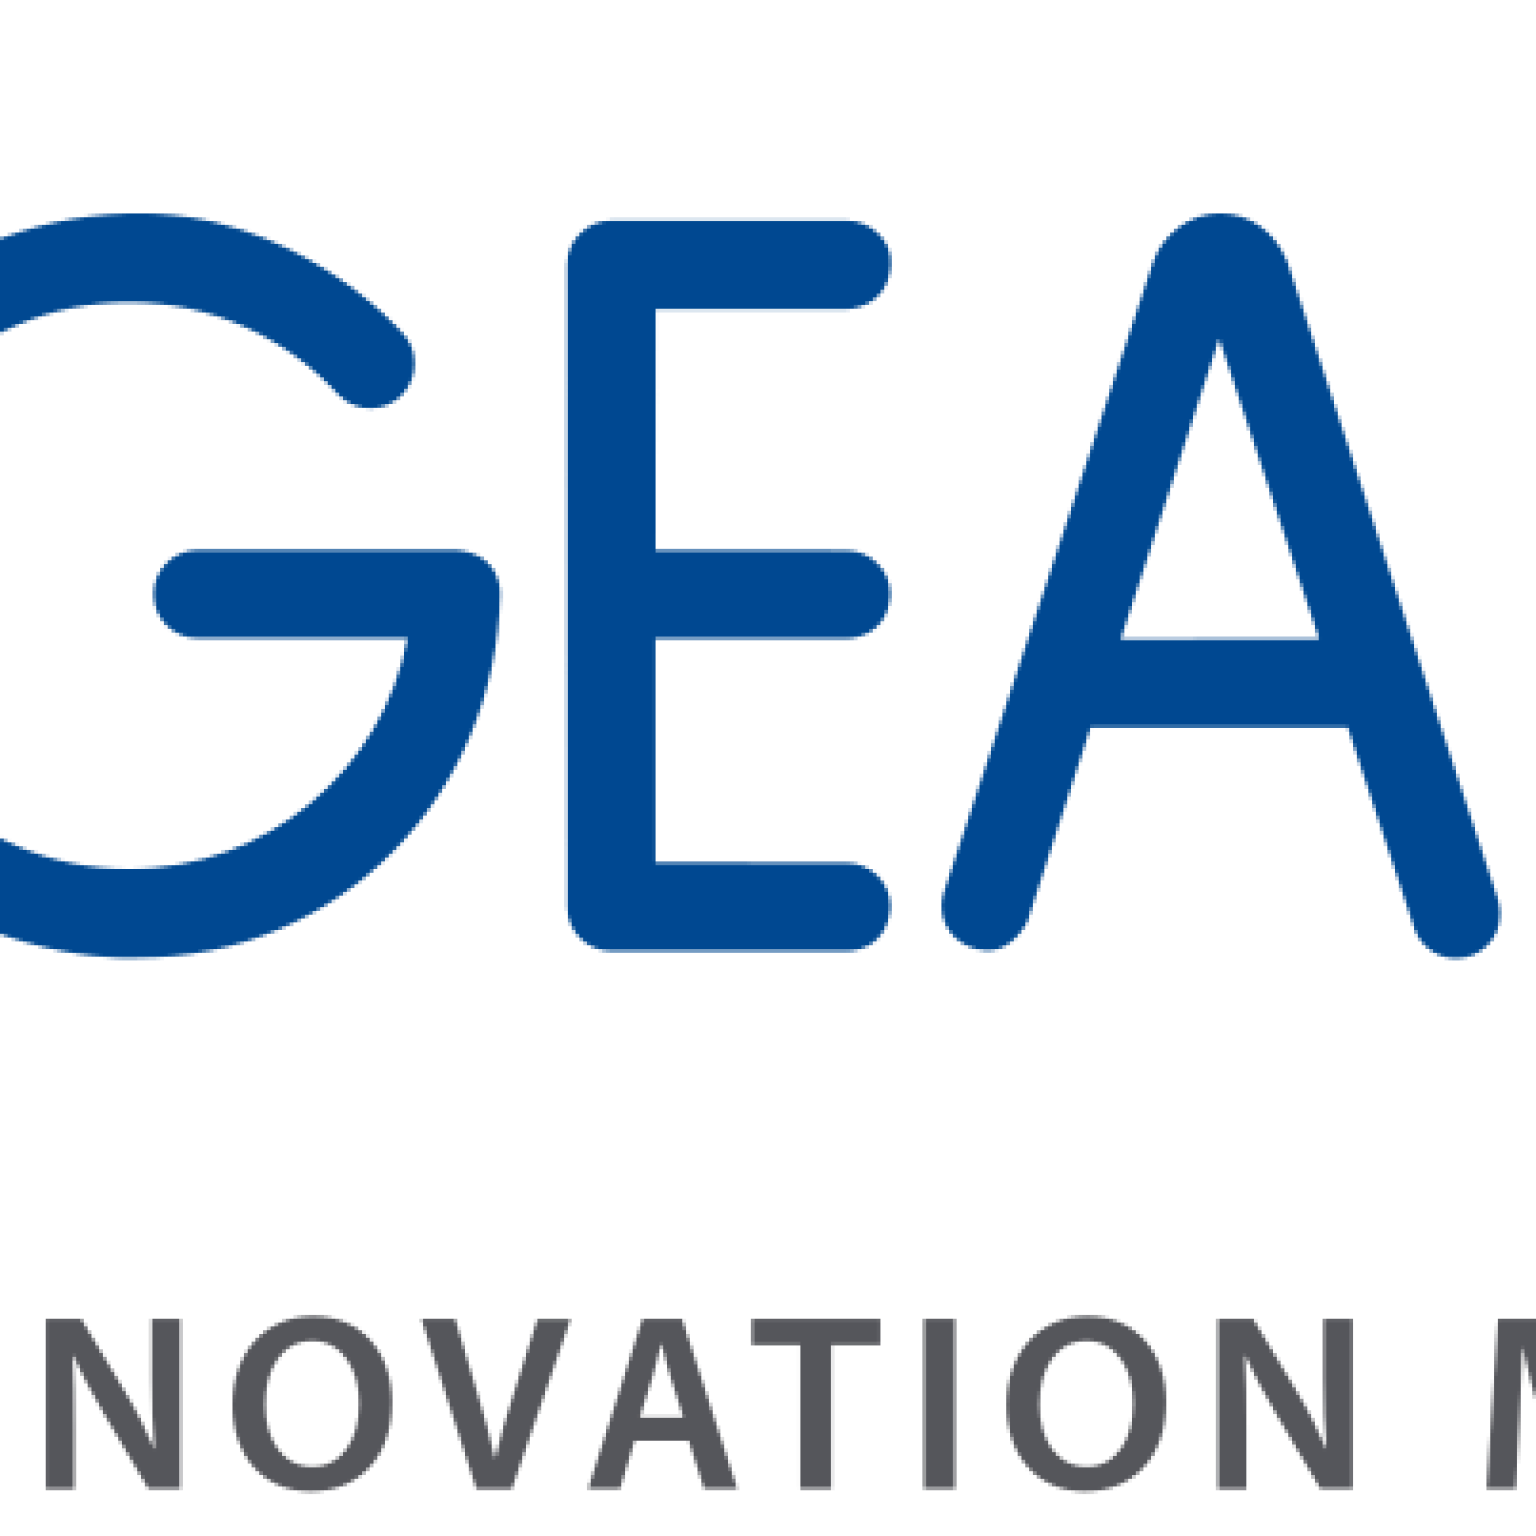 Gealan_Fenster-Systeme_logo.svg